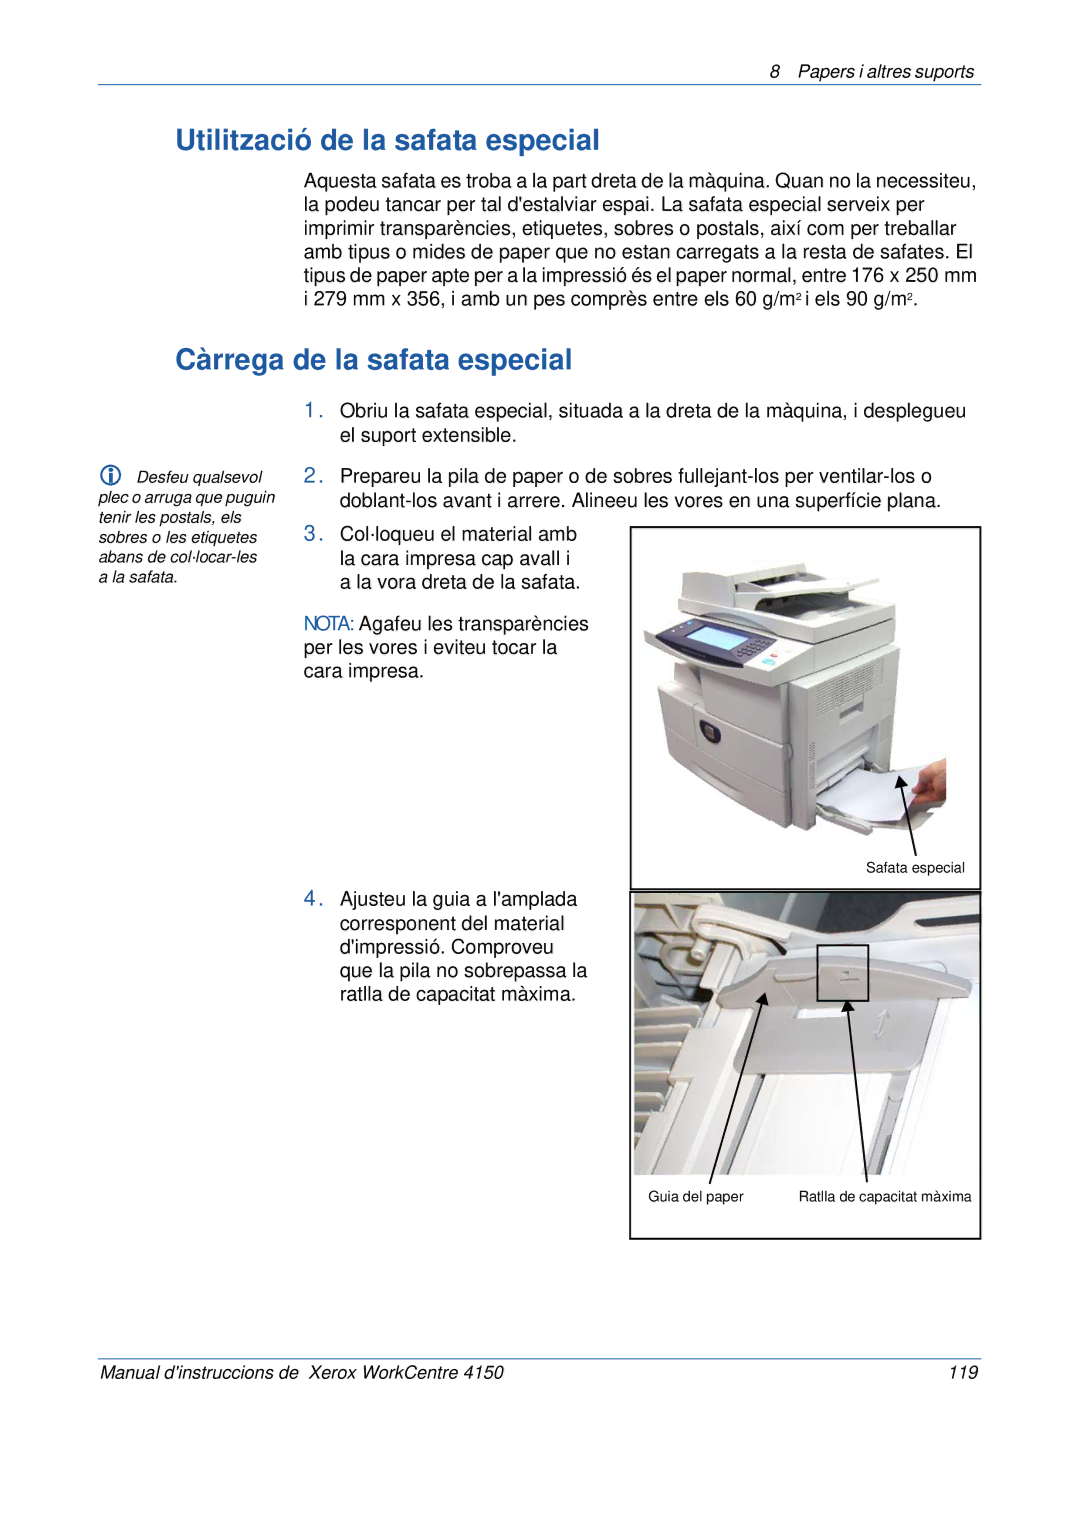 Xerox 5.0 24.03.06 manual Utilització de la safata especial, Càrrega de la safata especial 